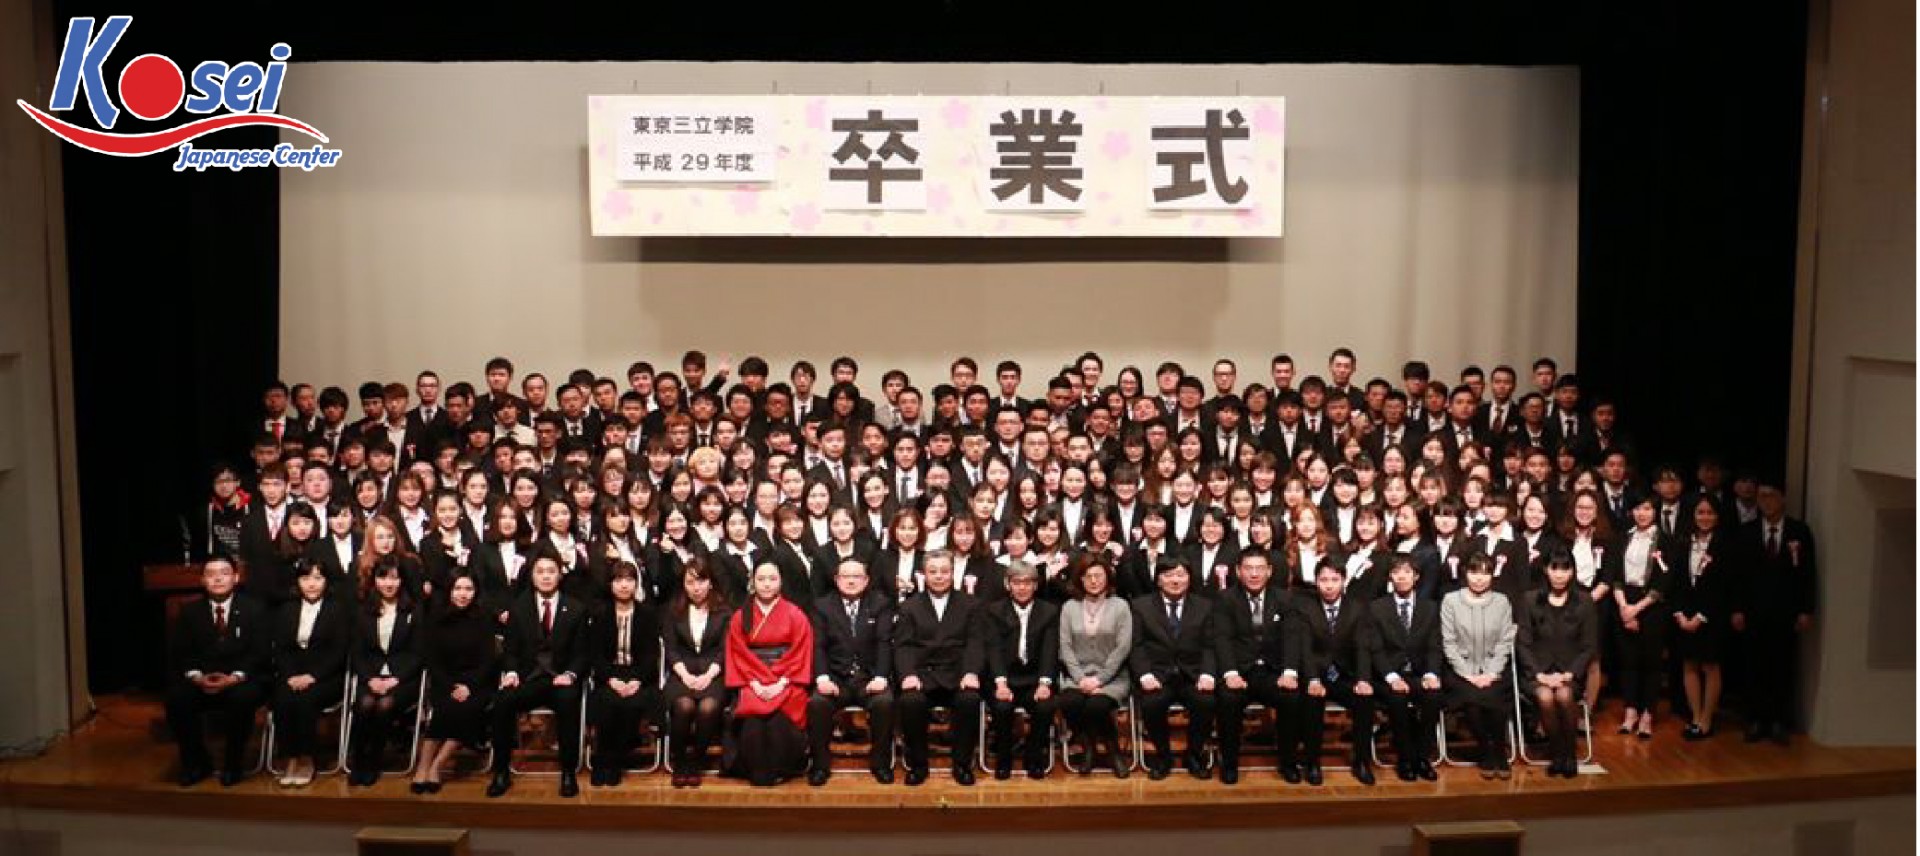 Trường Tokyo Sanritsu Academy